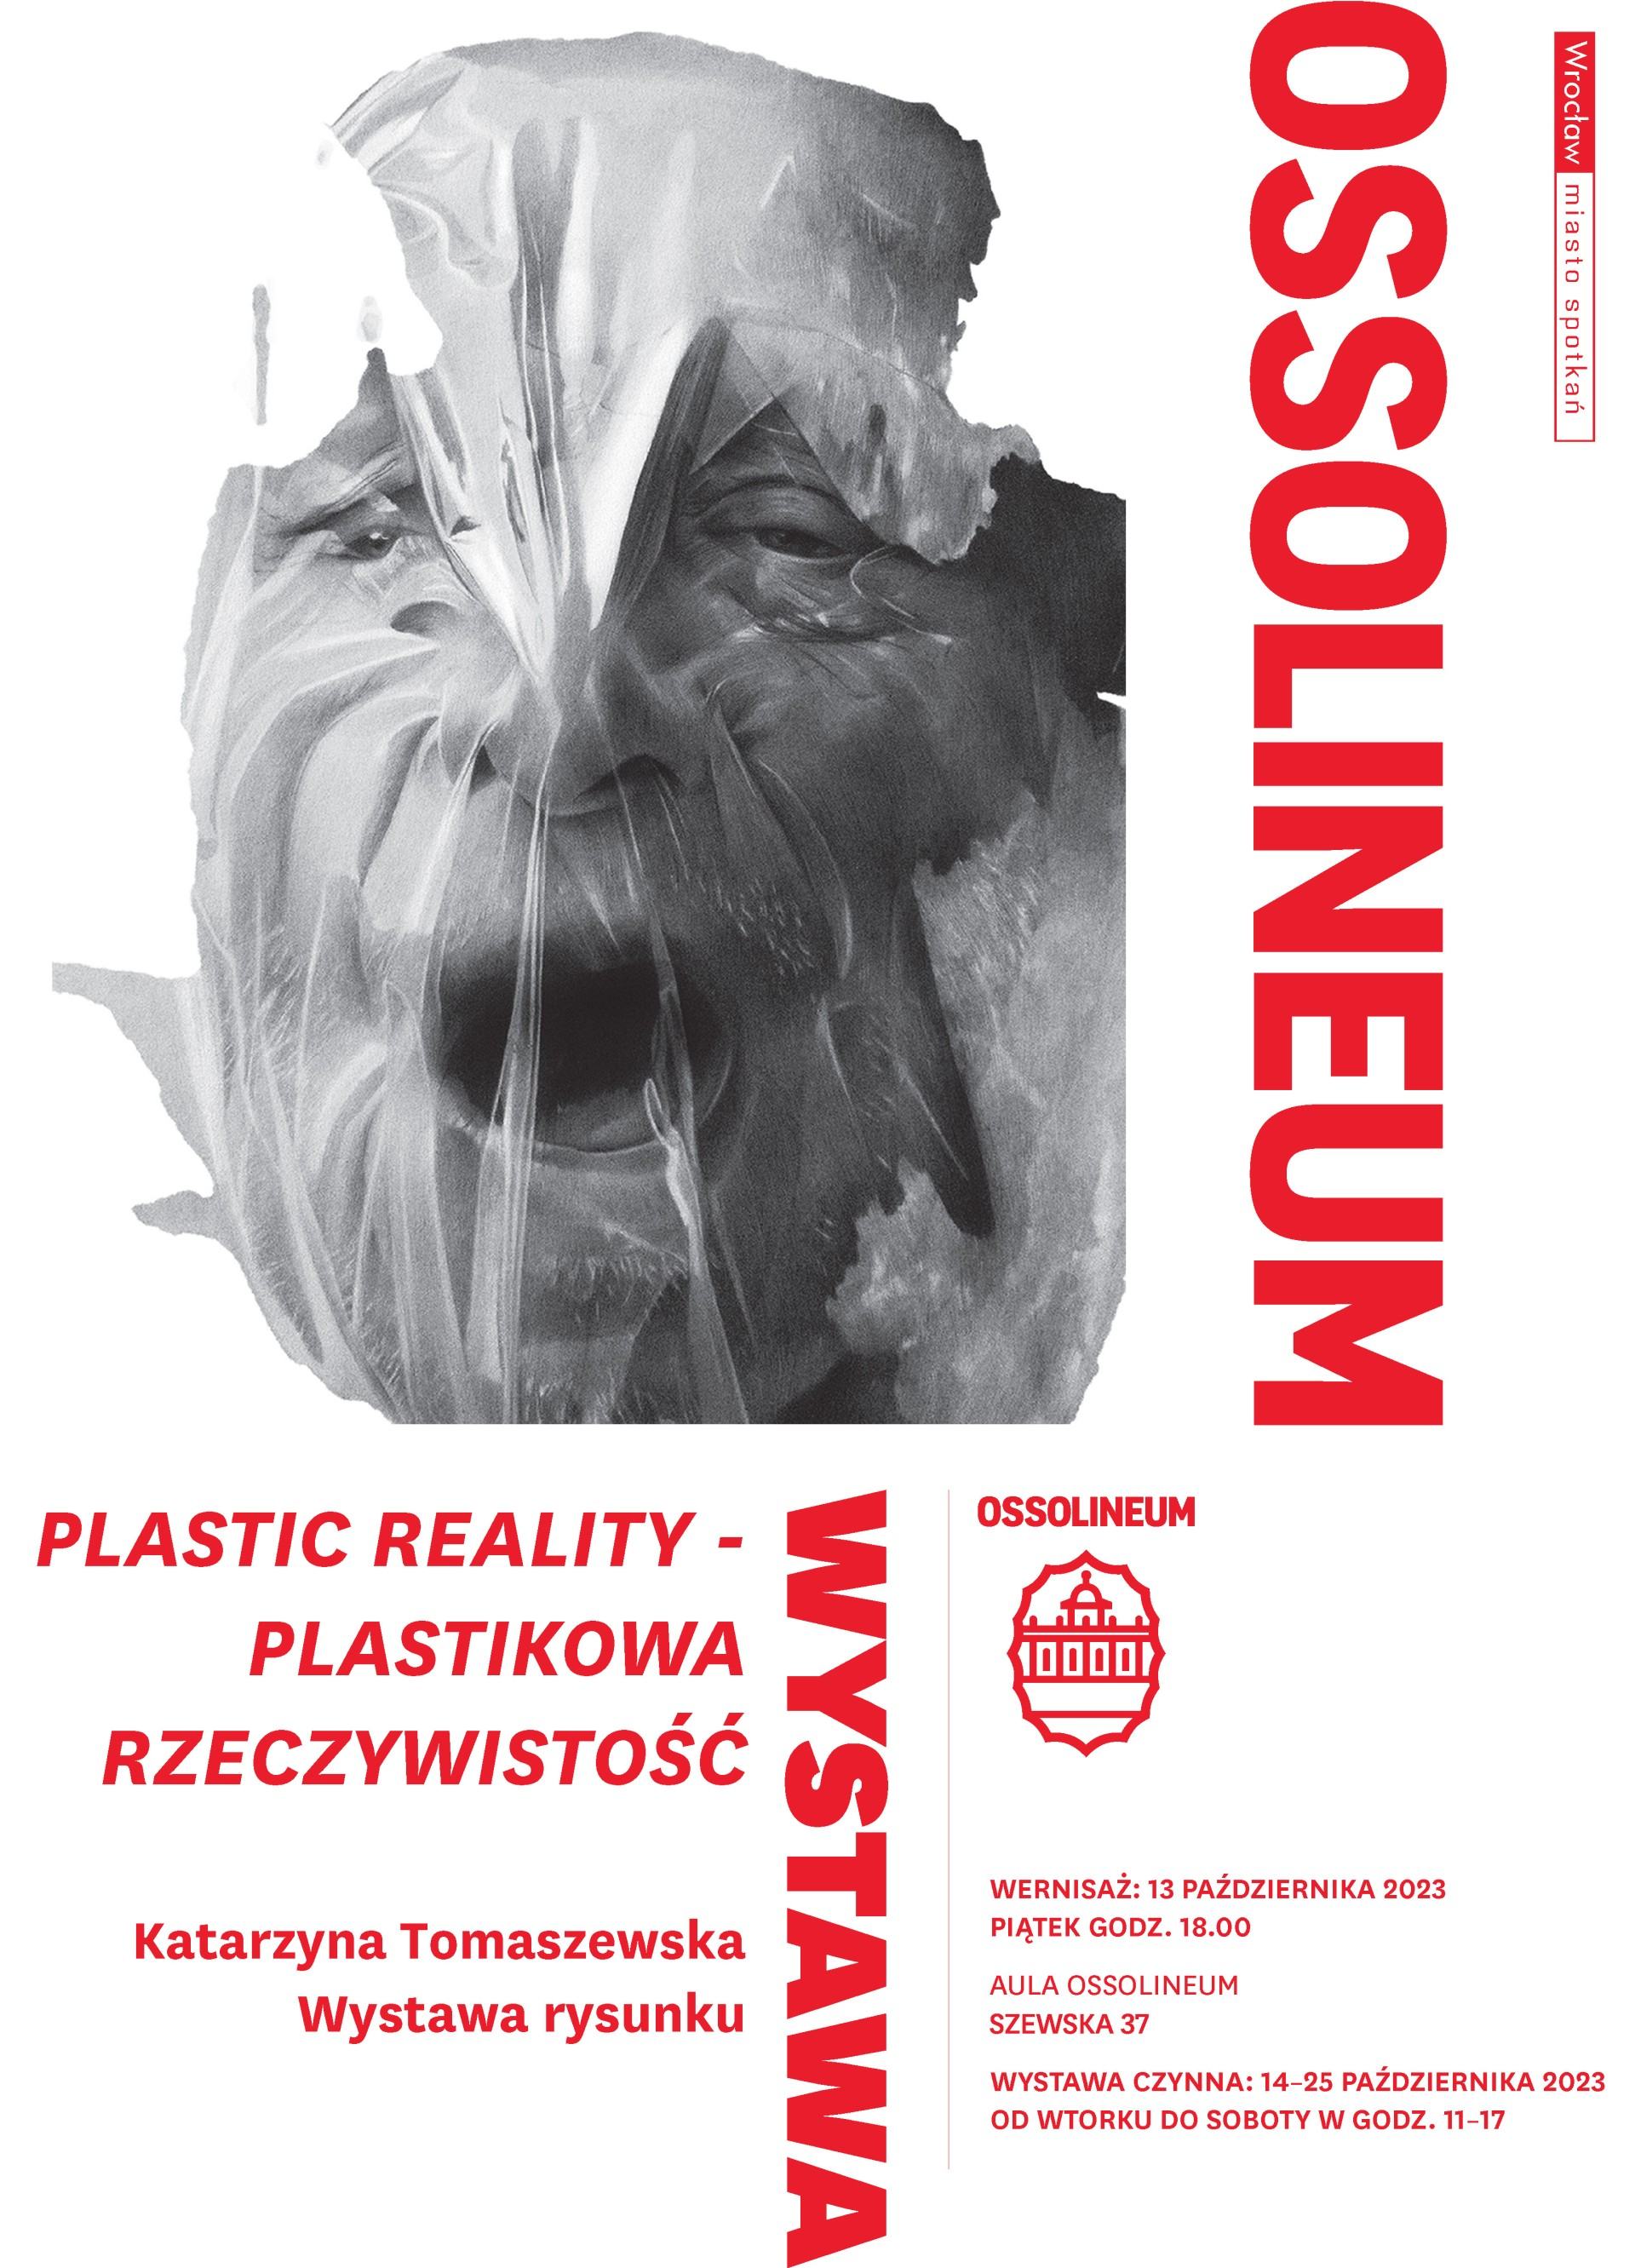 Plastic Reality - Plastikowa Rzeczywistość